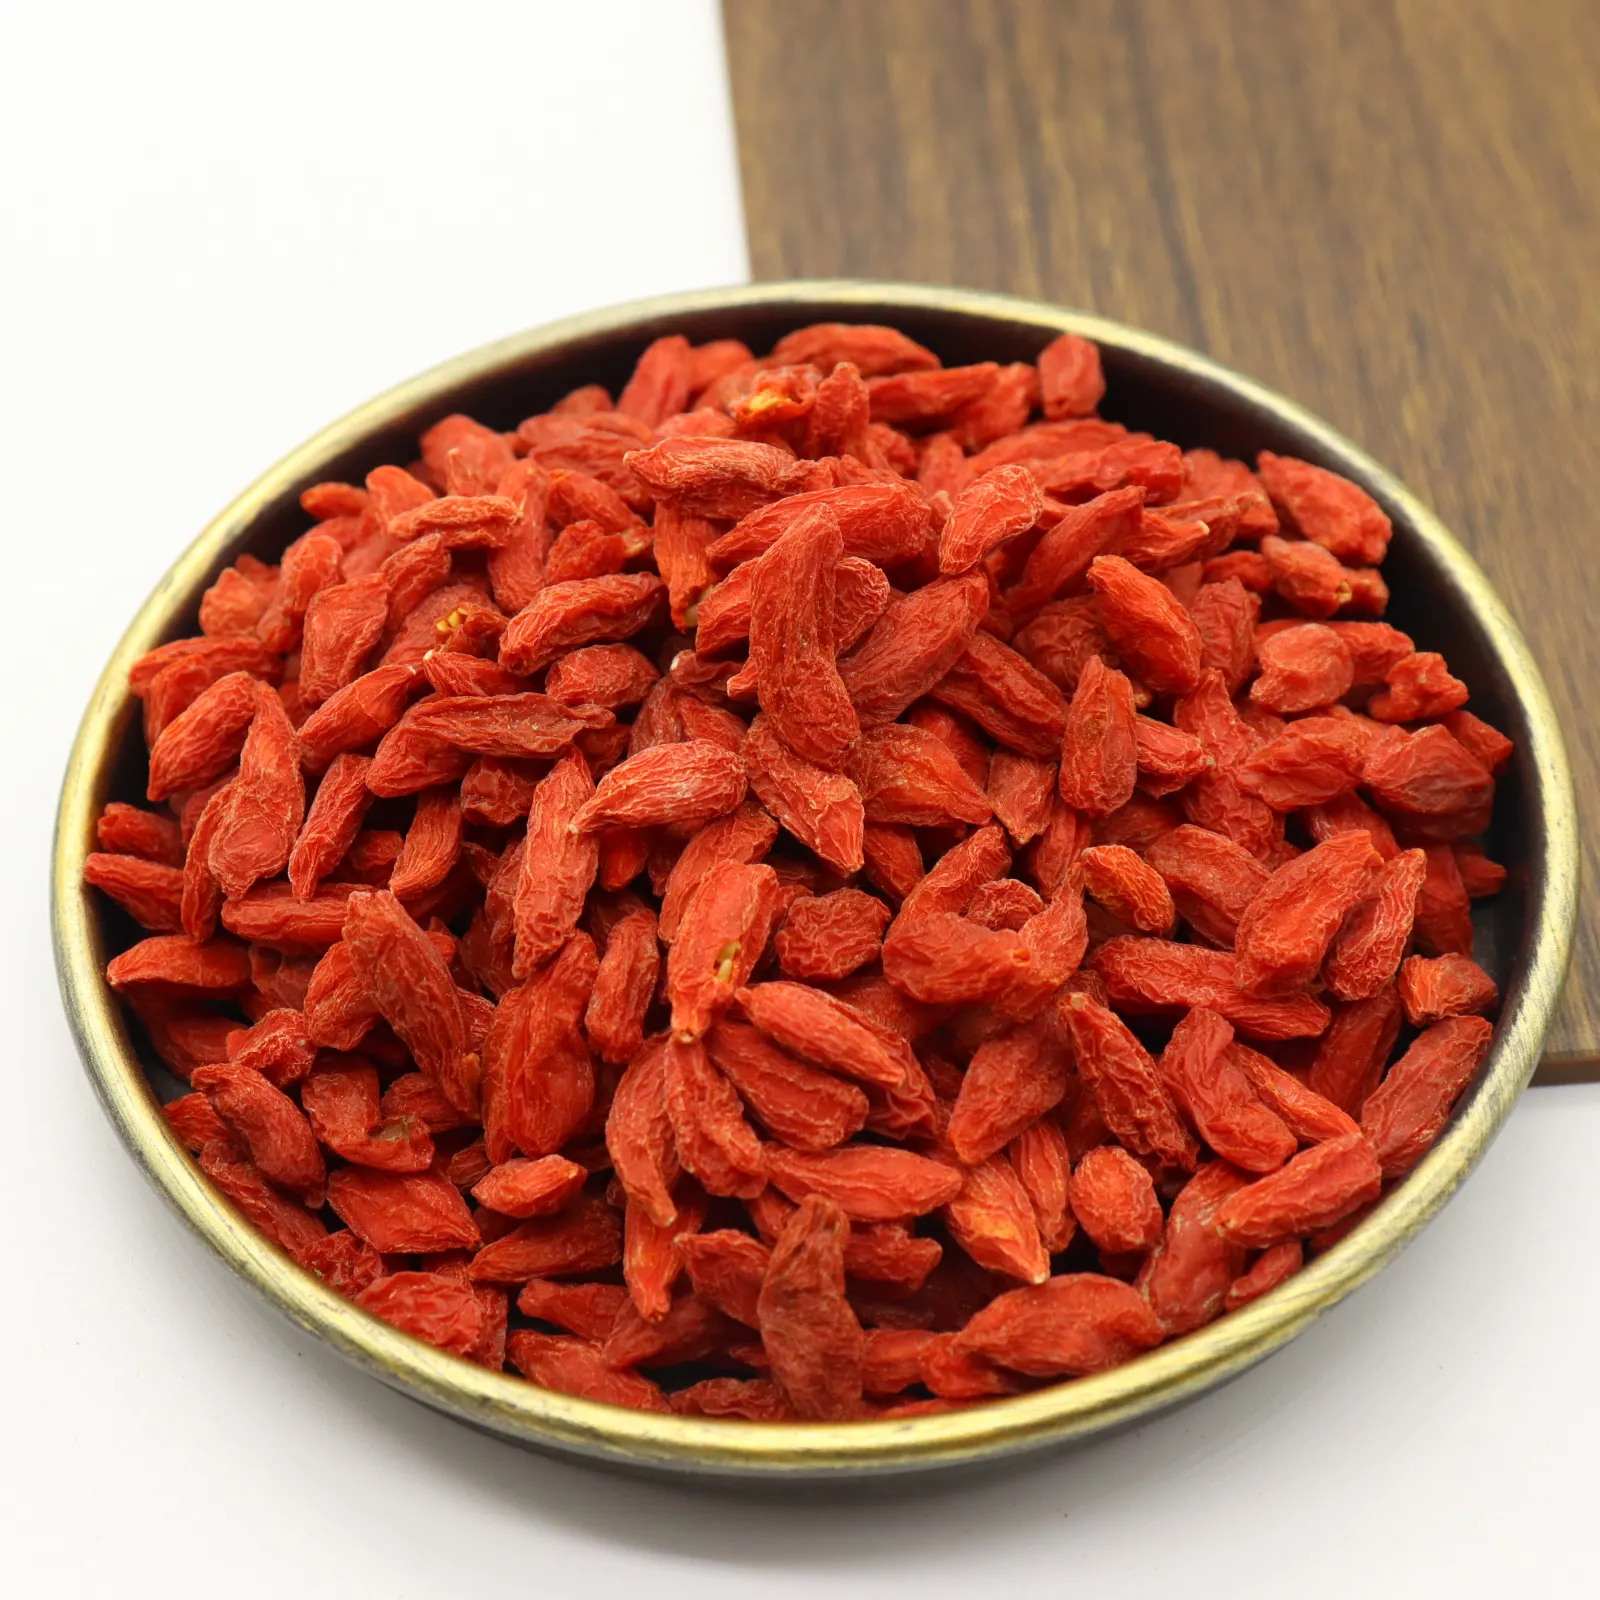 โกจิเบอร์รี่สีแดงอบแห้งธรรมชาติพืชออร์แกนิกจากประเทศจีนอาหารเพื่อสุขภาพ